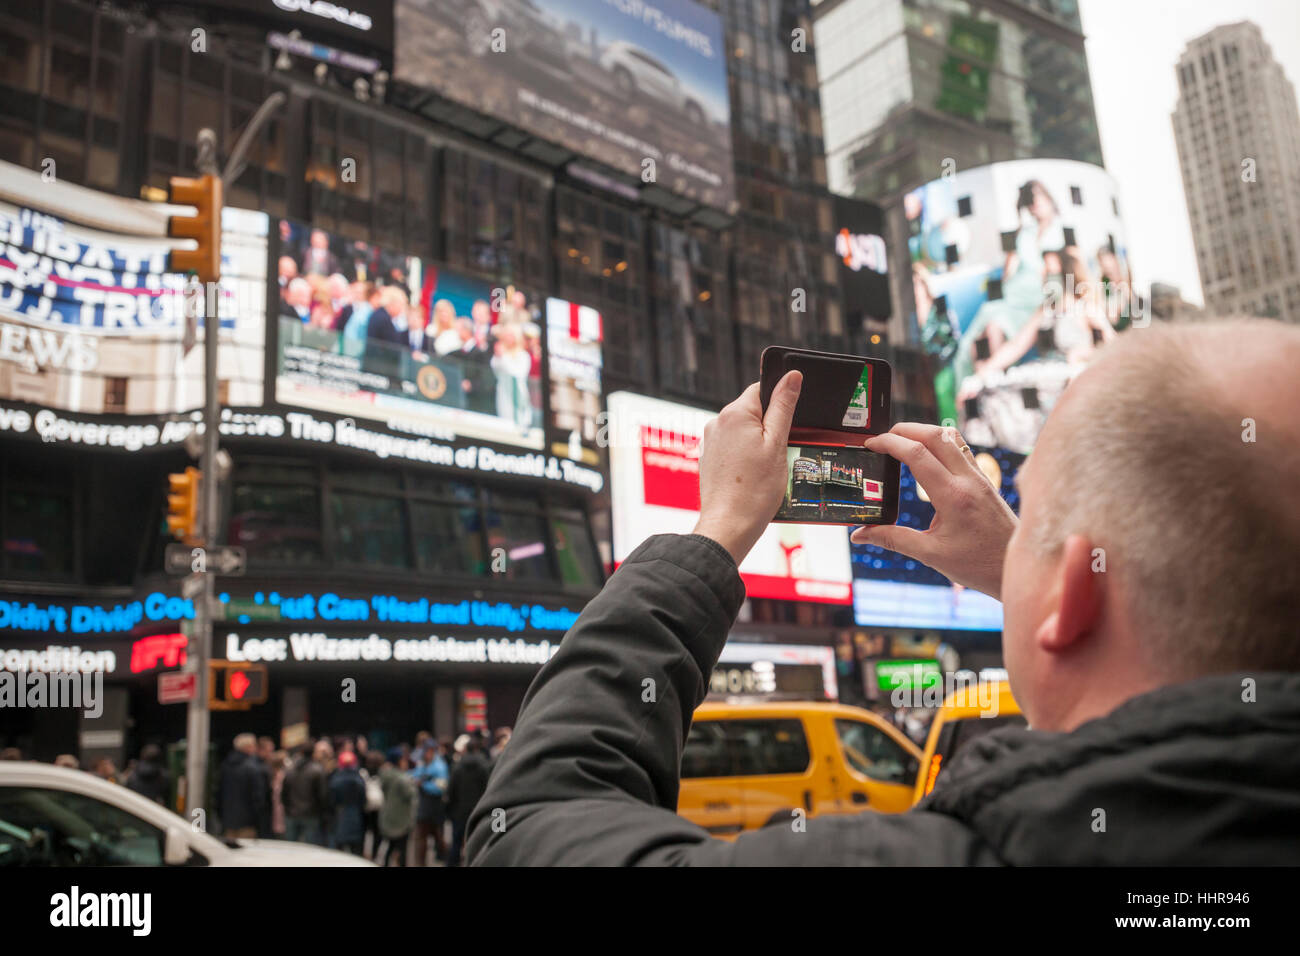 New York, USA. 20 Jan, 2017. Les visiteurs de Times Square à New York voir l'inauguration de l'atout de Donald comme le 45e président des États-Unis sur l'écran géant de télévision ABC le vendredi 20 janvier 2017. Crédit : Richard Levine/Alamy Live News Banque D'Images